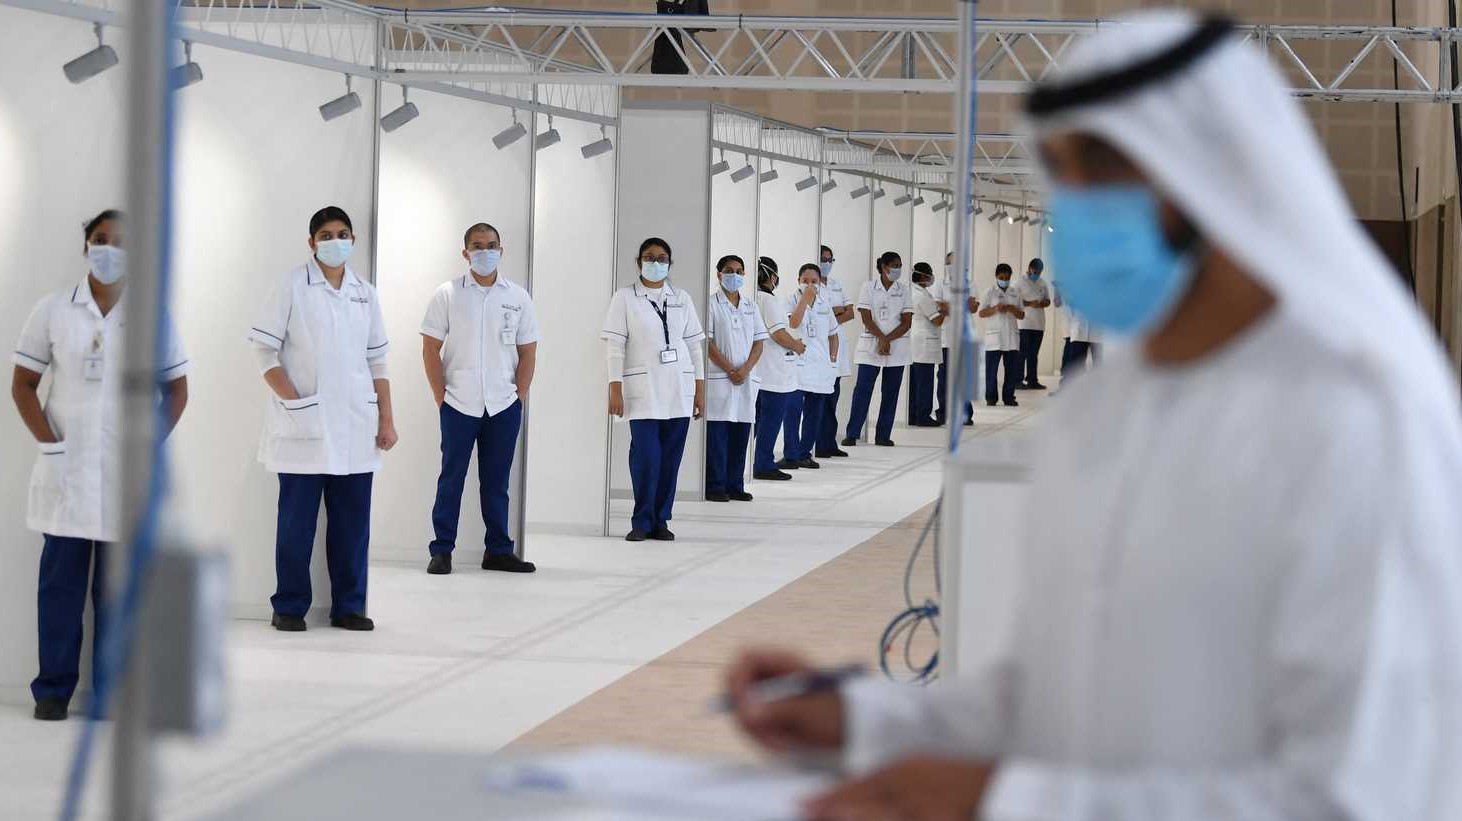 الإمارات تعلن نتائج استخدام عقار سوتروفيماب ضد كورونا